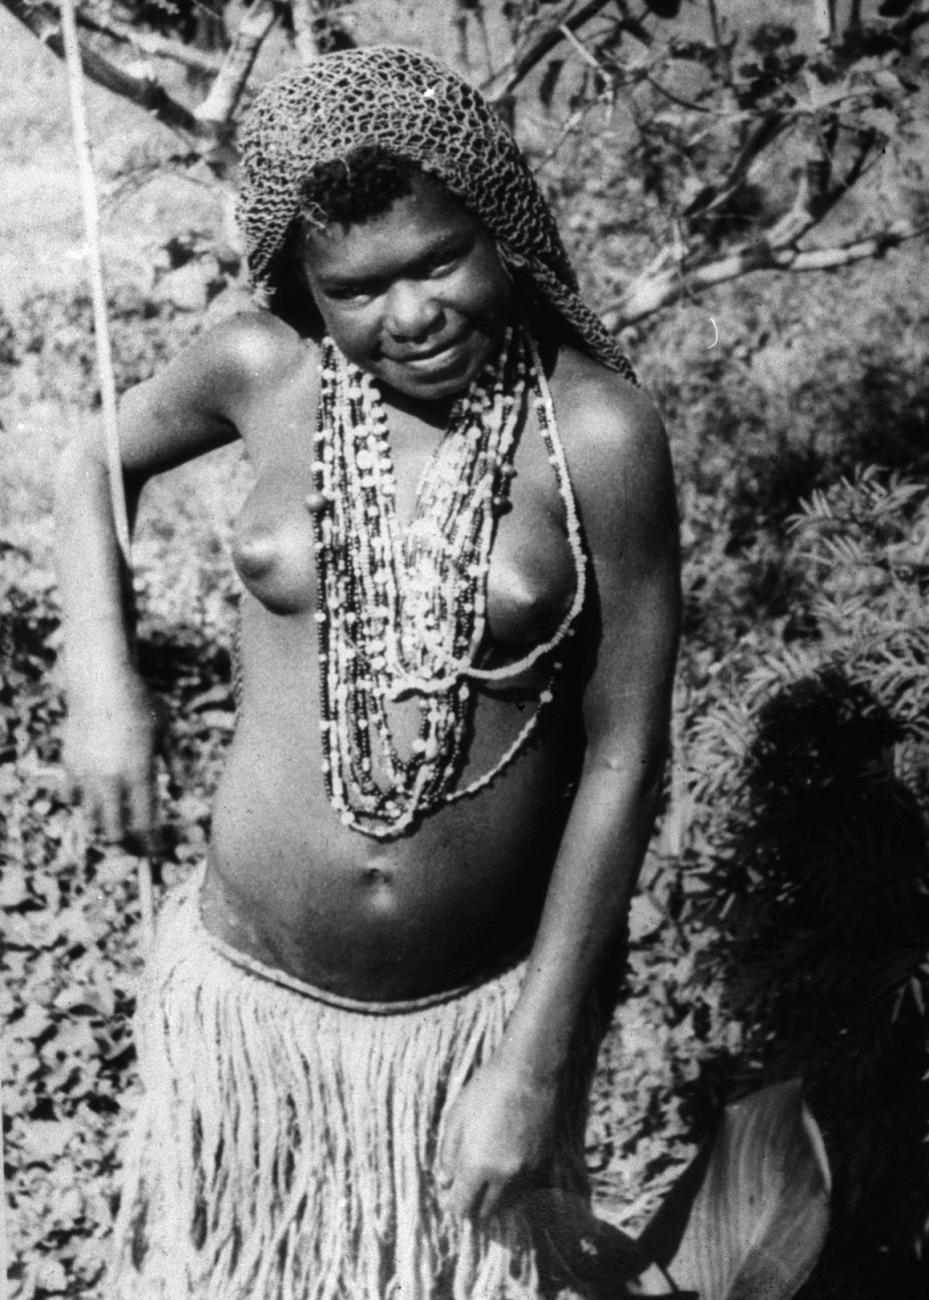 BD/216/89 - 
 Een Ekari meisje met rieten rok, ketting met kralenen zaden en haarnet
